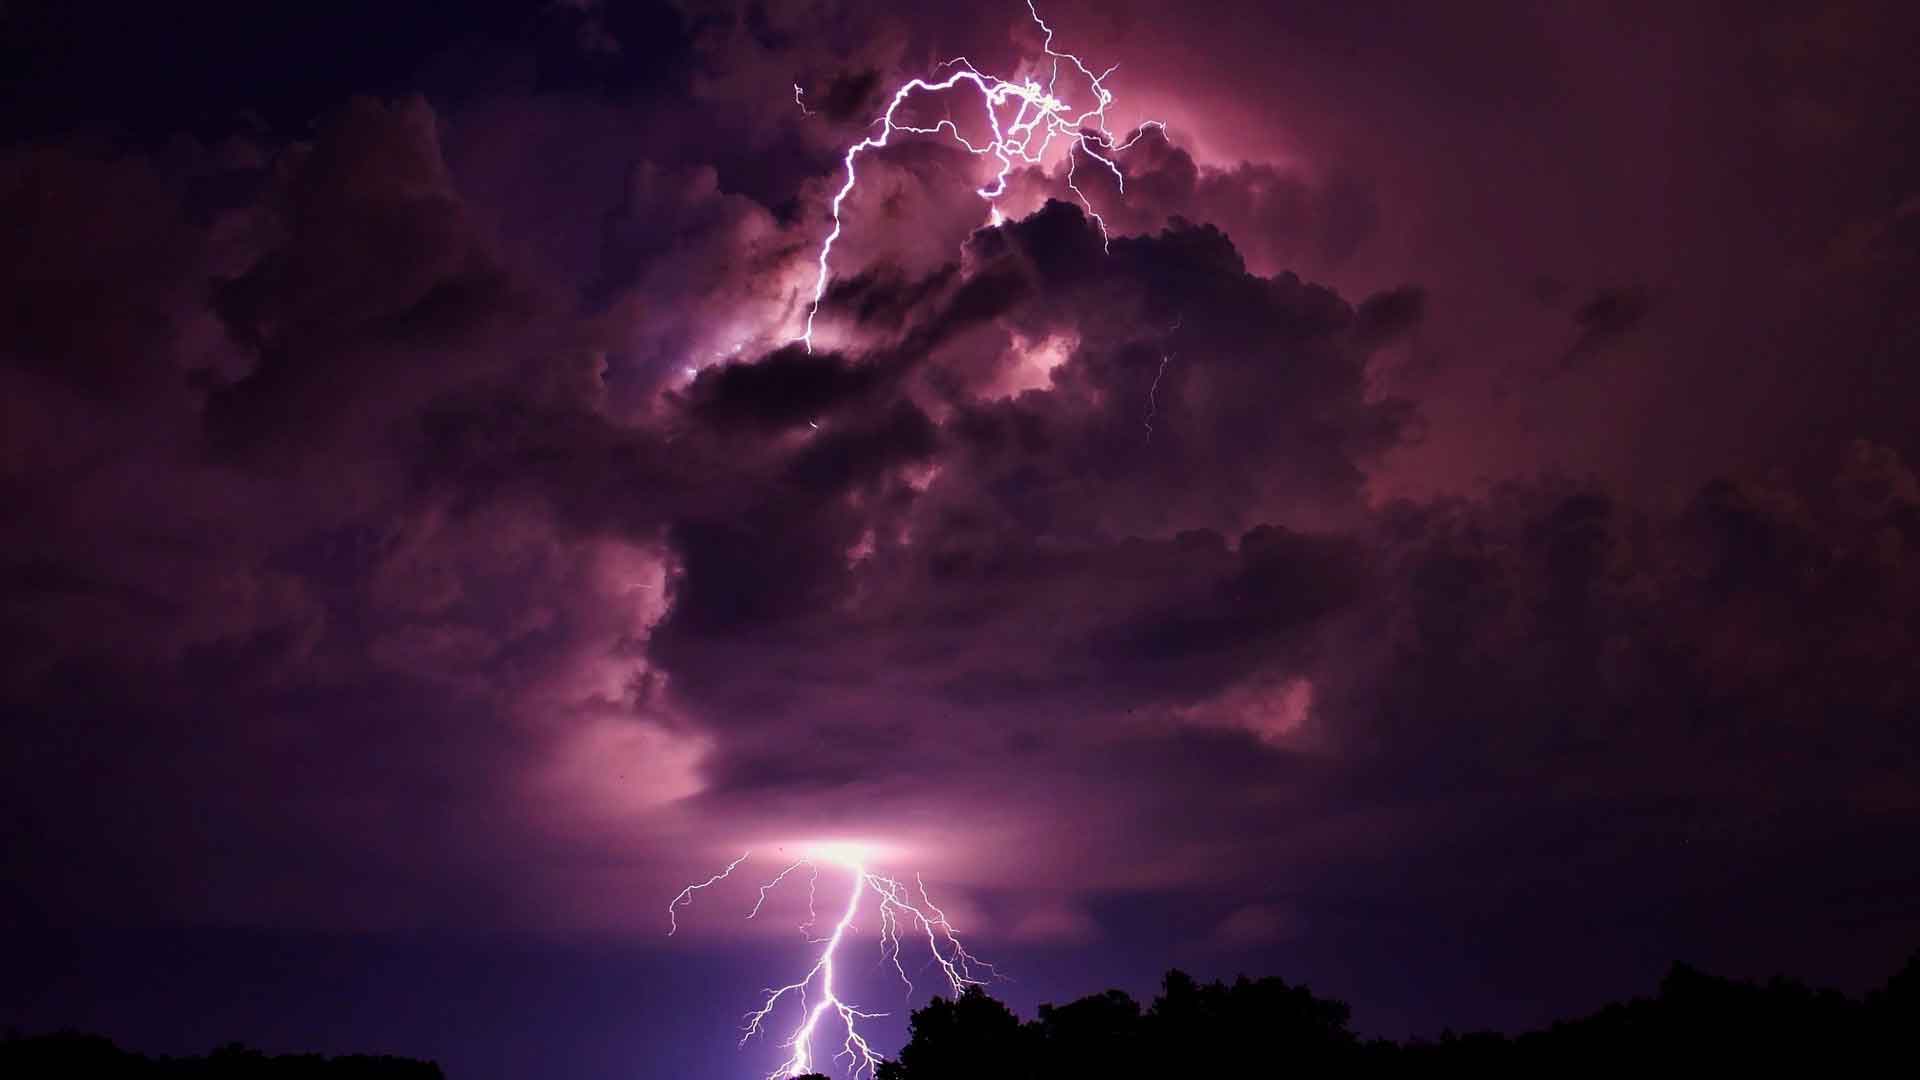 Free Download Lightning Storm Backgrounds Pixelstalk Net